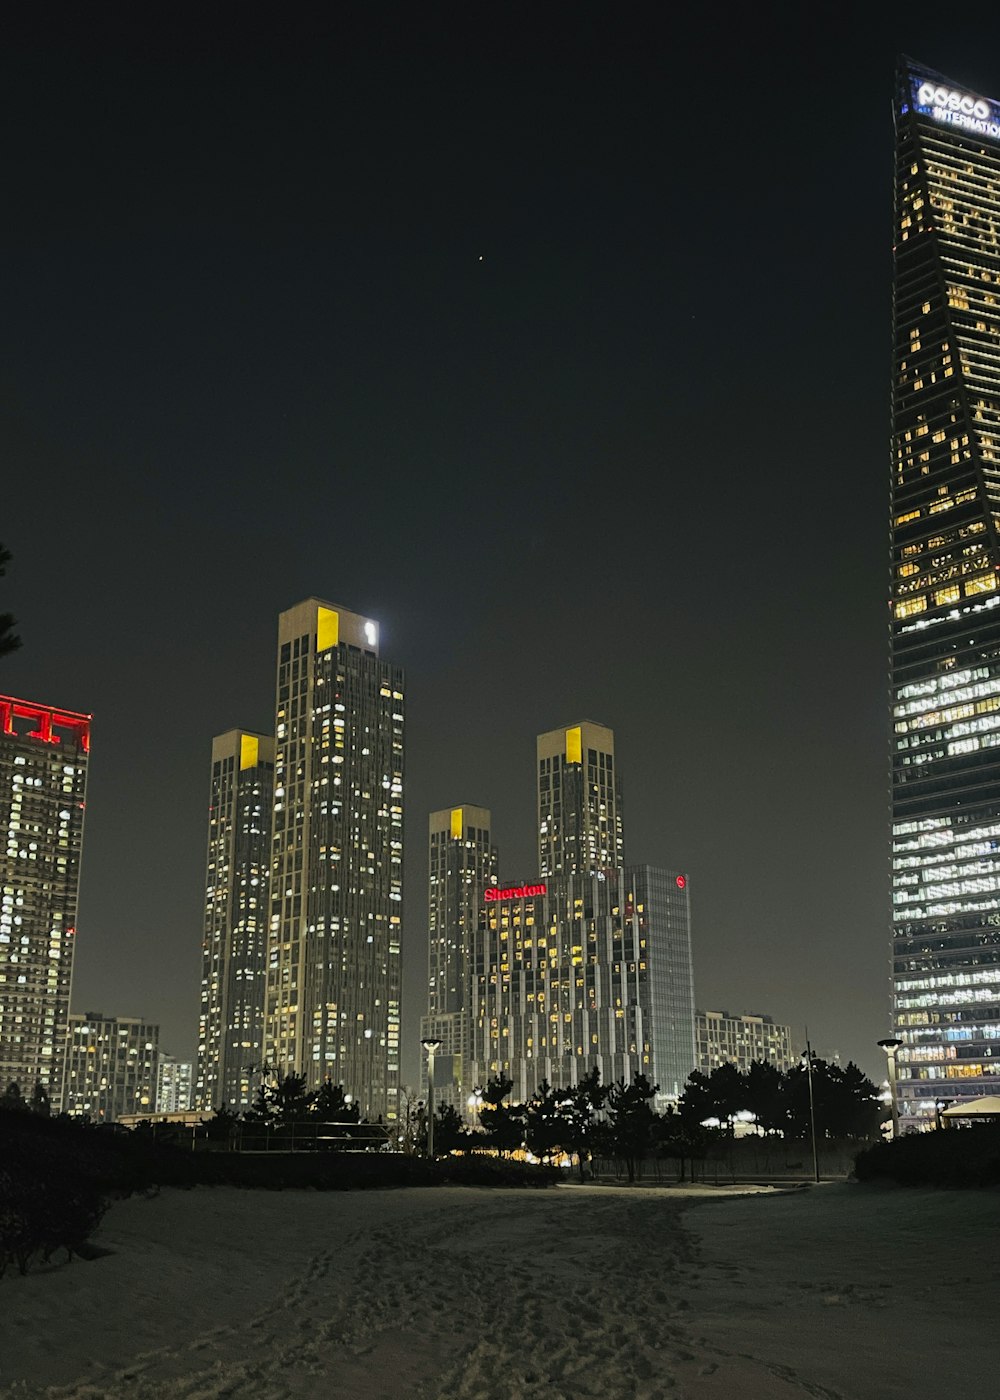 고층 빌딩이 불을 밝히는 밤의 도시 스카이라인